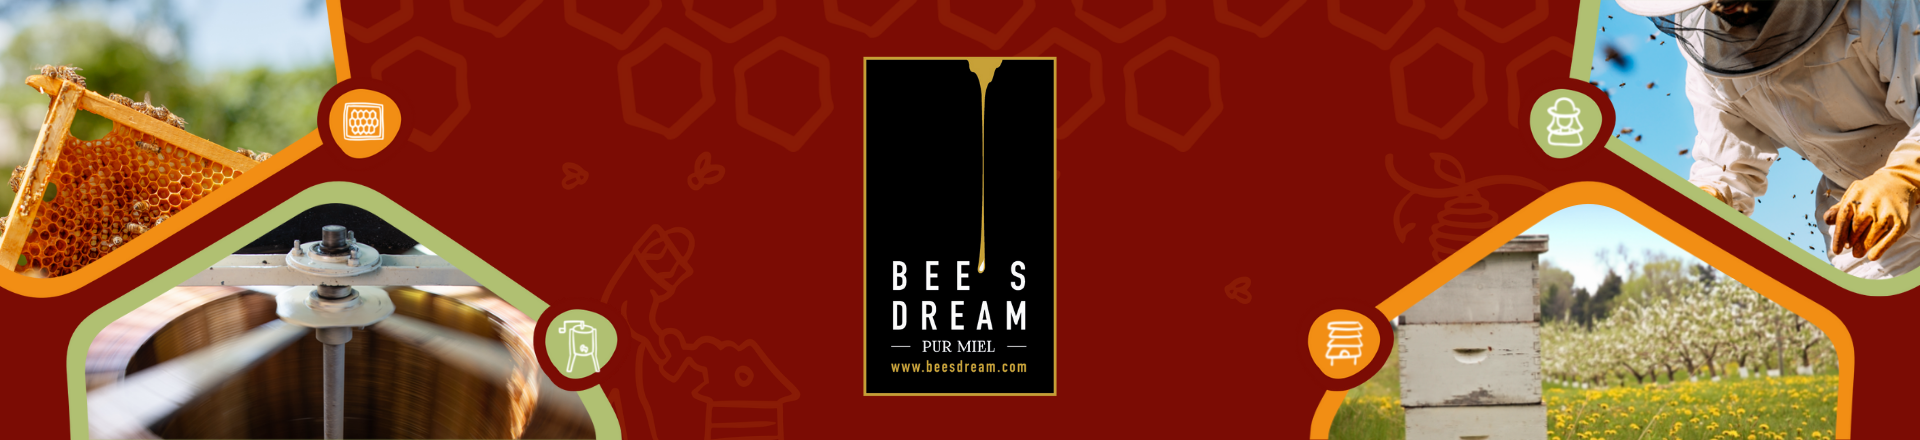 Bee's Dream